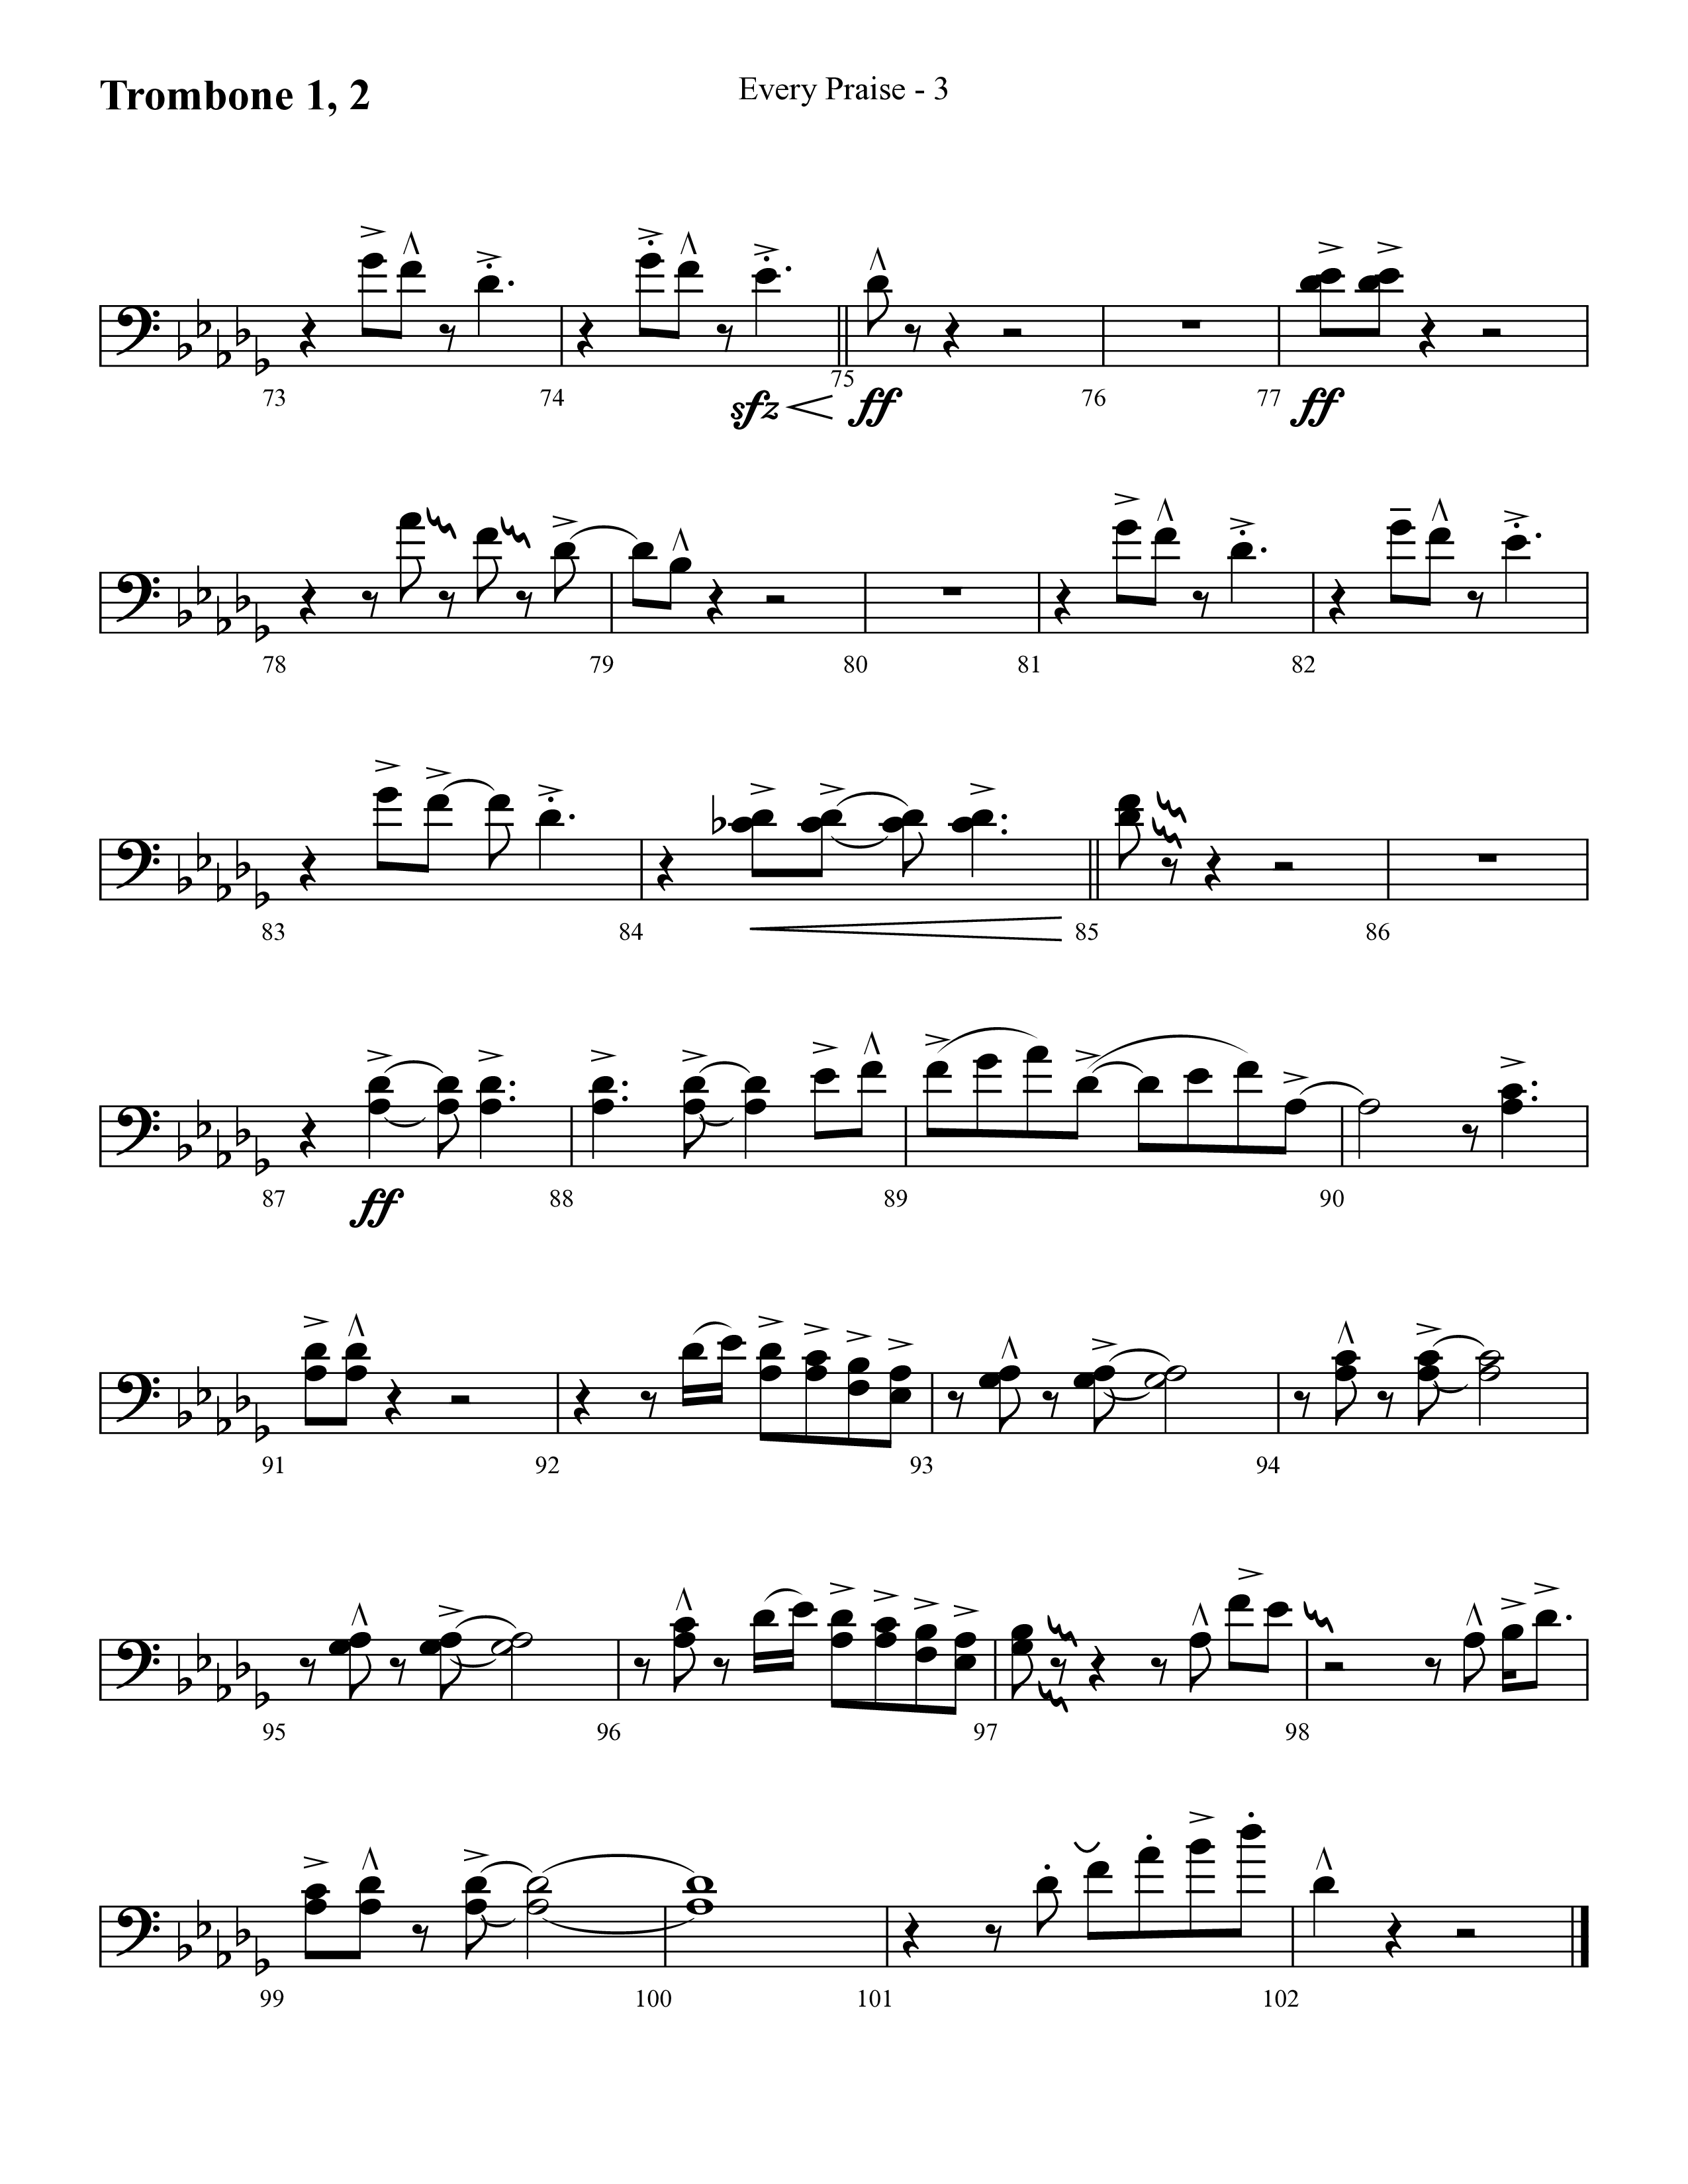 Every Praise (Choral Anthem SATB) Trombone 1/2 (Lifeway Choral / Arr. Cliff Duren)